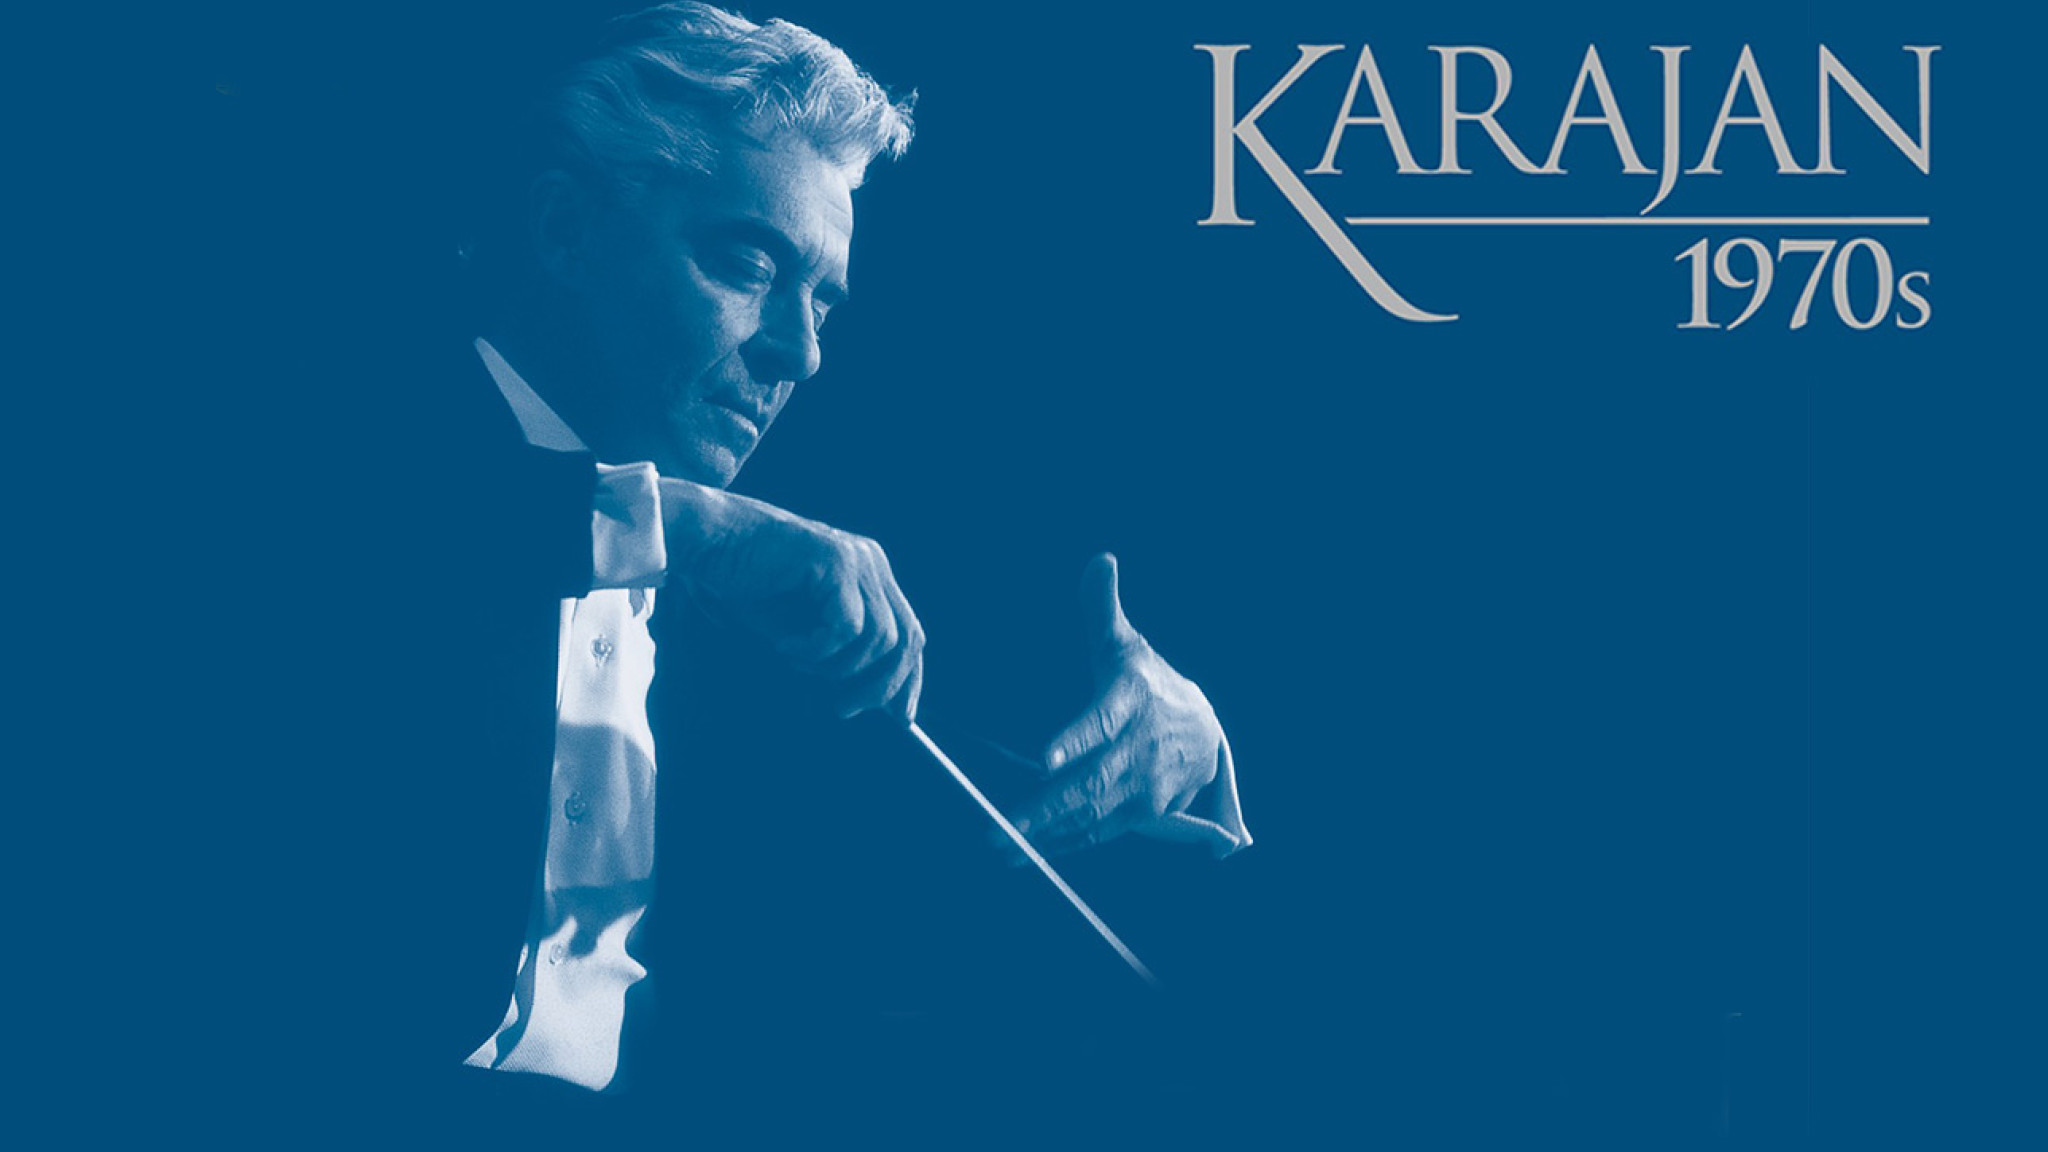 Karajan 1970s